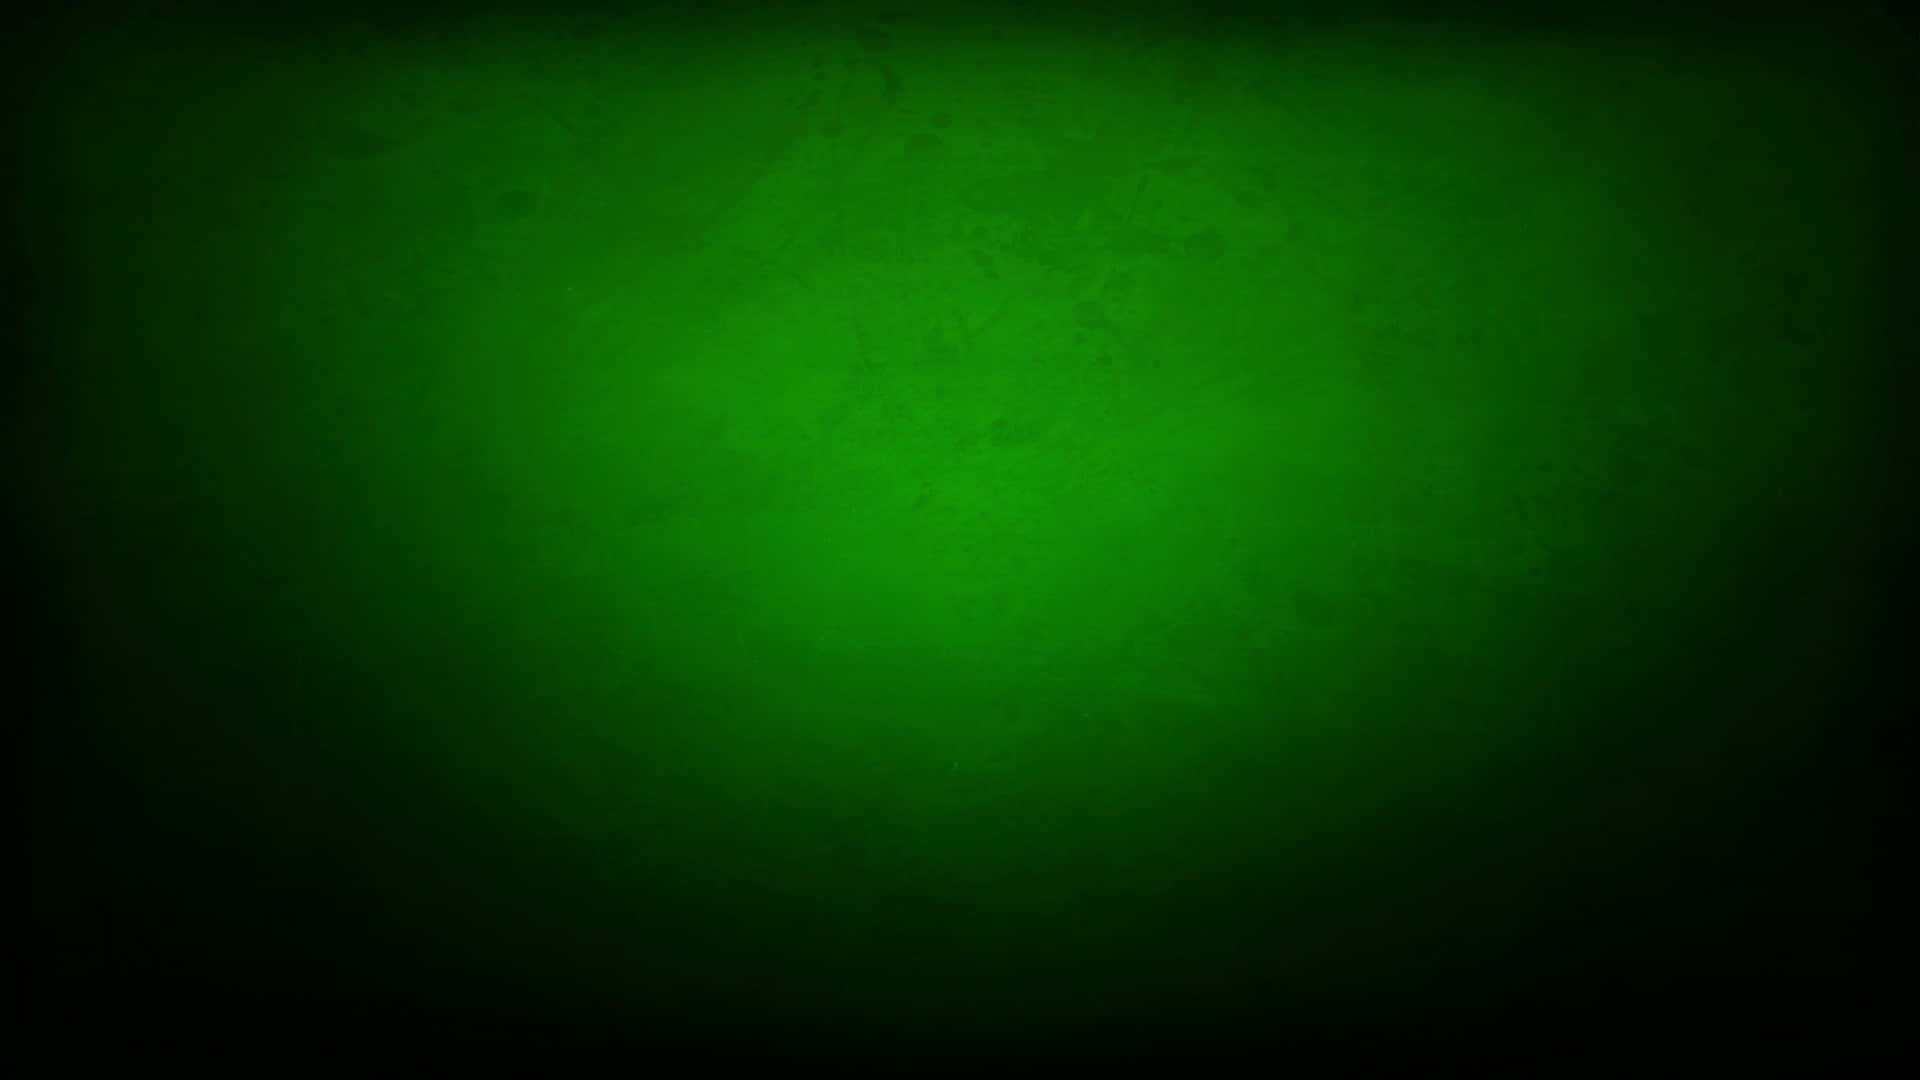 Enlivlig Mørkegrøn Baggrund.